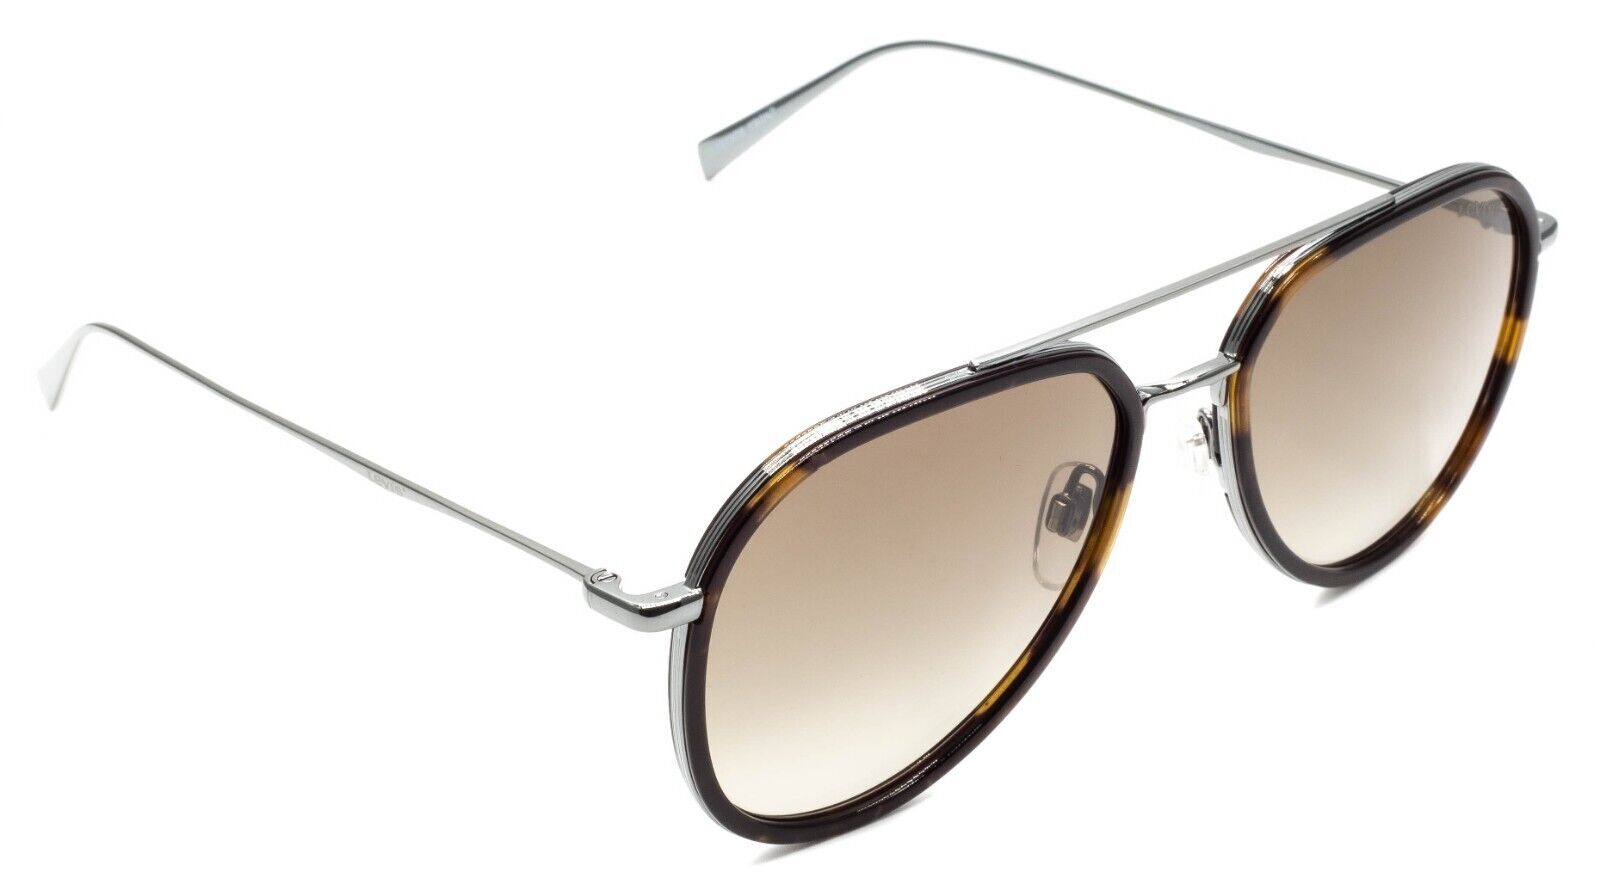 LEVI'S LV 5000S J5G 1V Sunglasses Gold Frame Blue Shaded Gold Mirror  Lenses 56mm